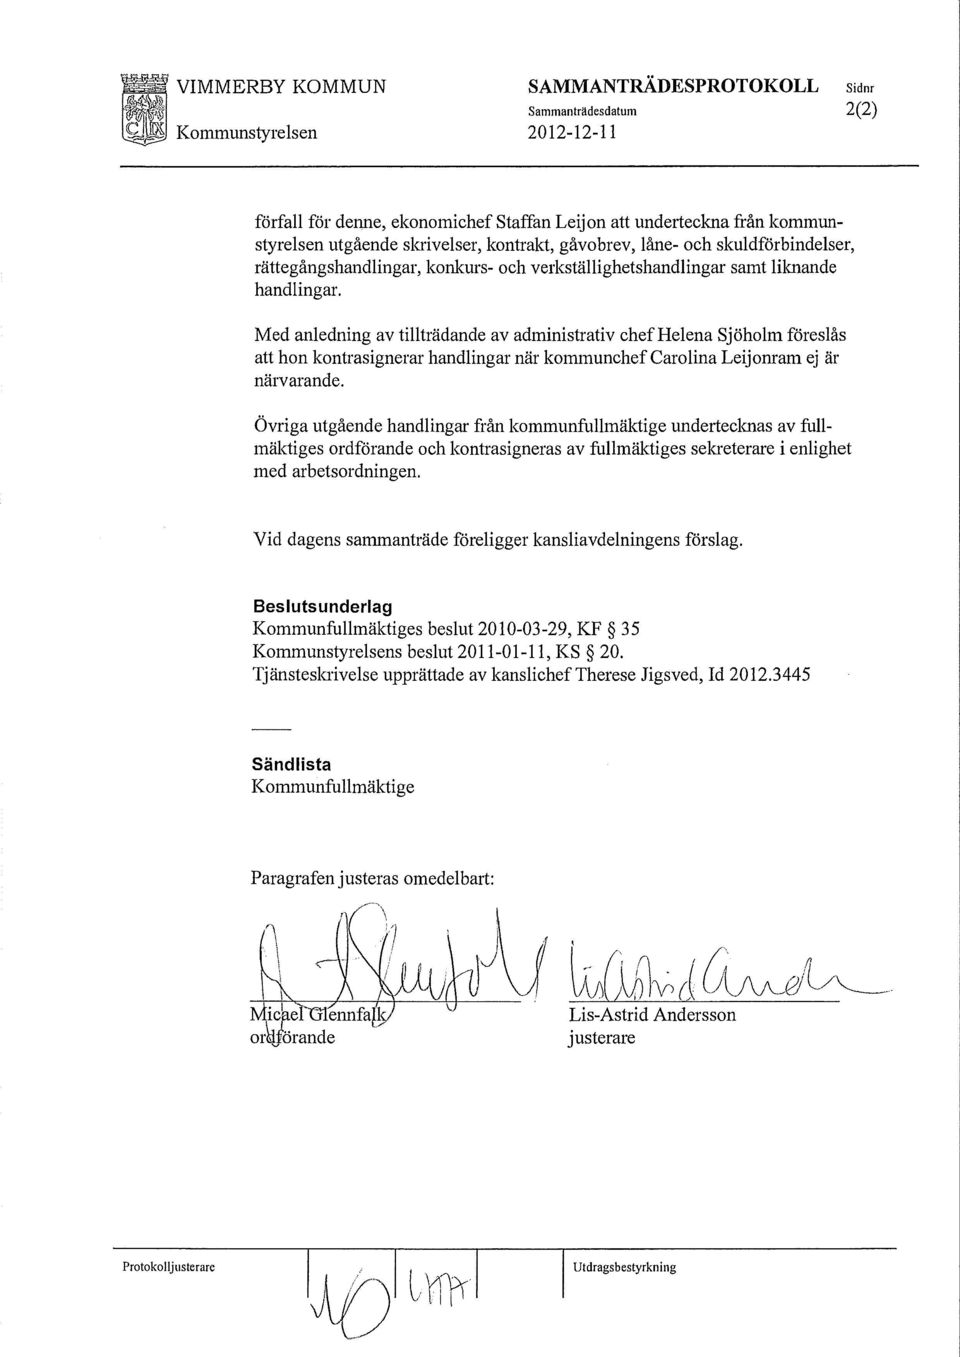 Med anledning av tillträdande av administrativ chef Helena Sjöholm föreslås att hon kontrasignerar handlingar när kommunchef Carolina Leijonram ej är närvarande.